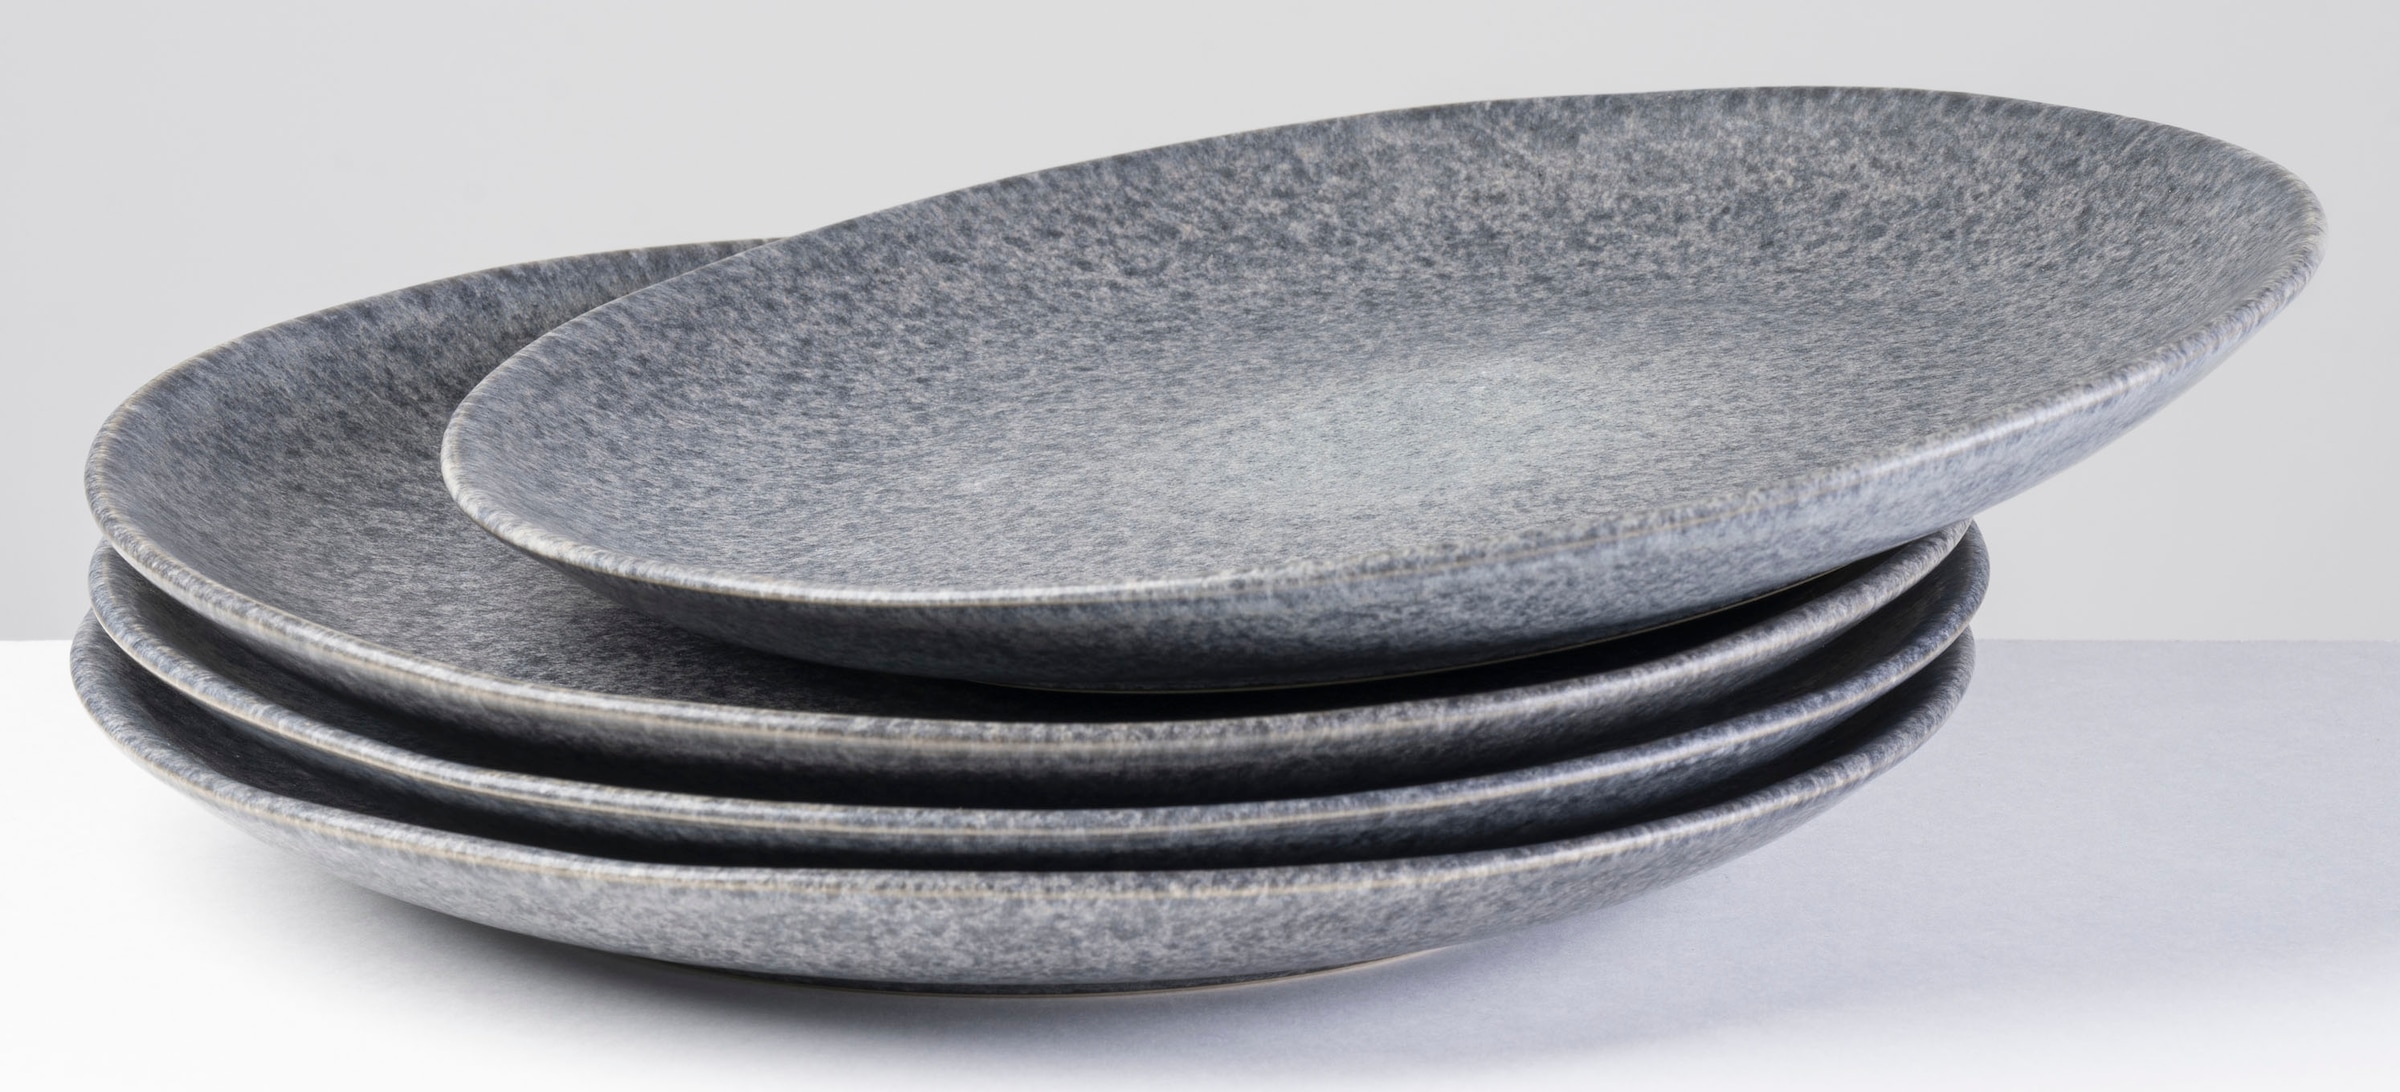 CreaTable Tafelservice Uno schwarz Steinzeug 12 tlg. ▷ online bei POCO  kaufen